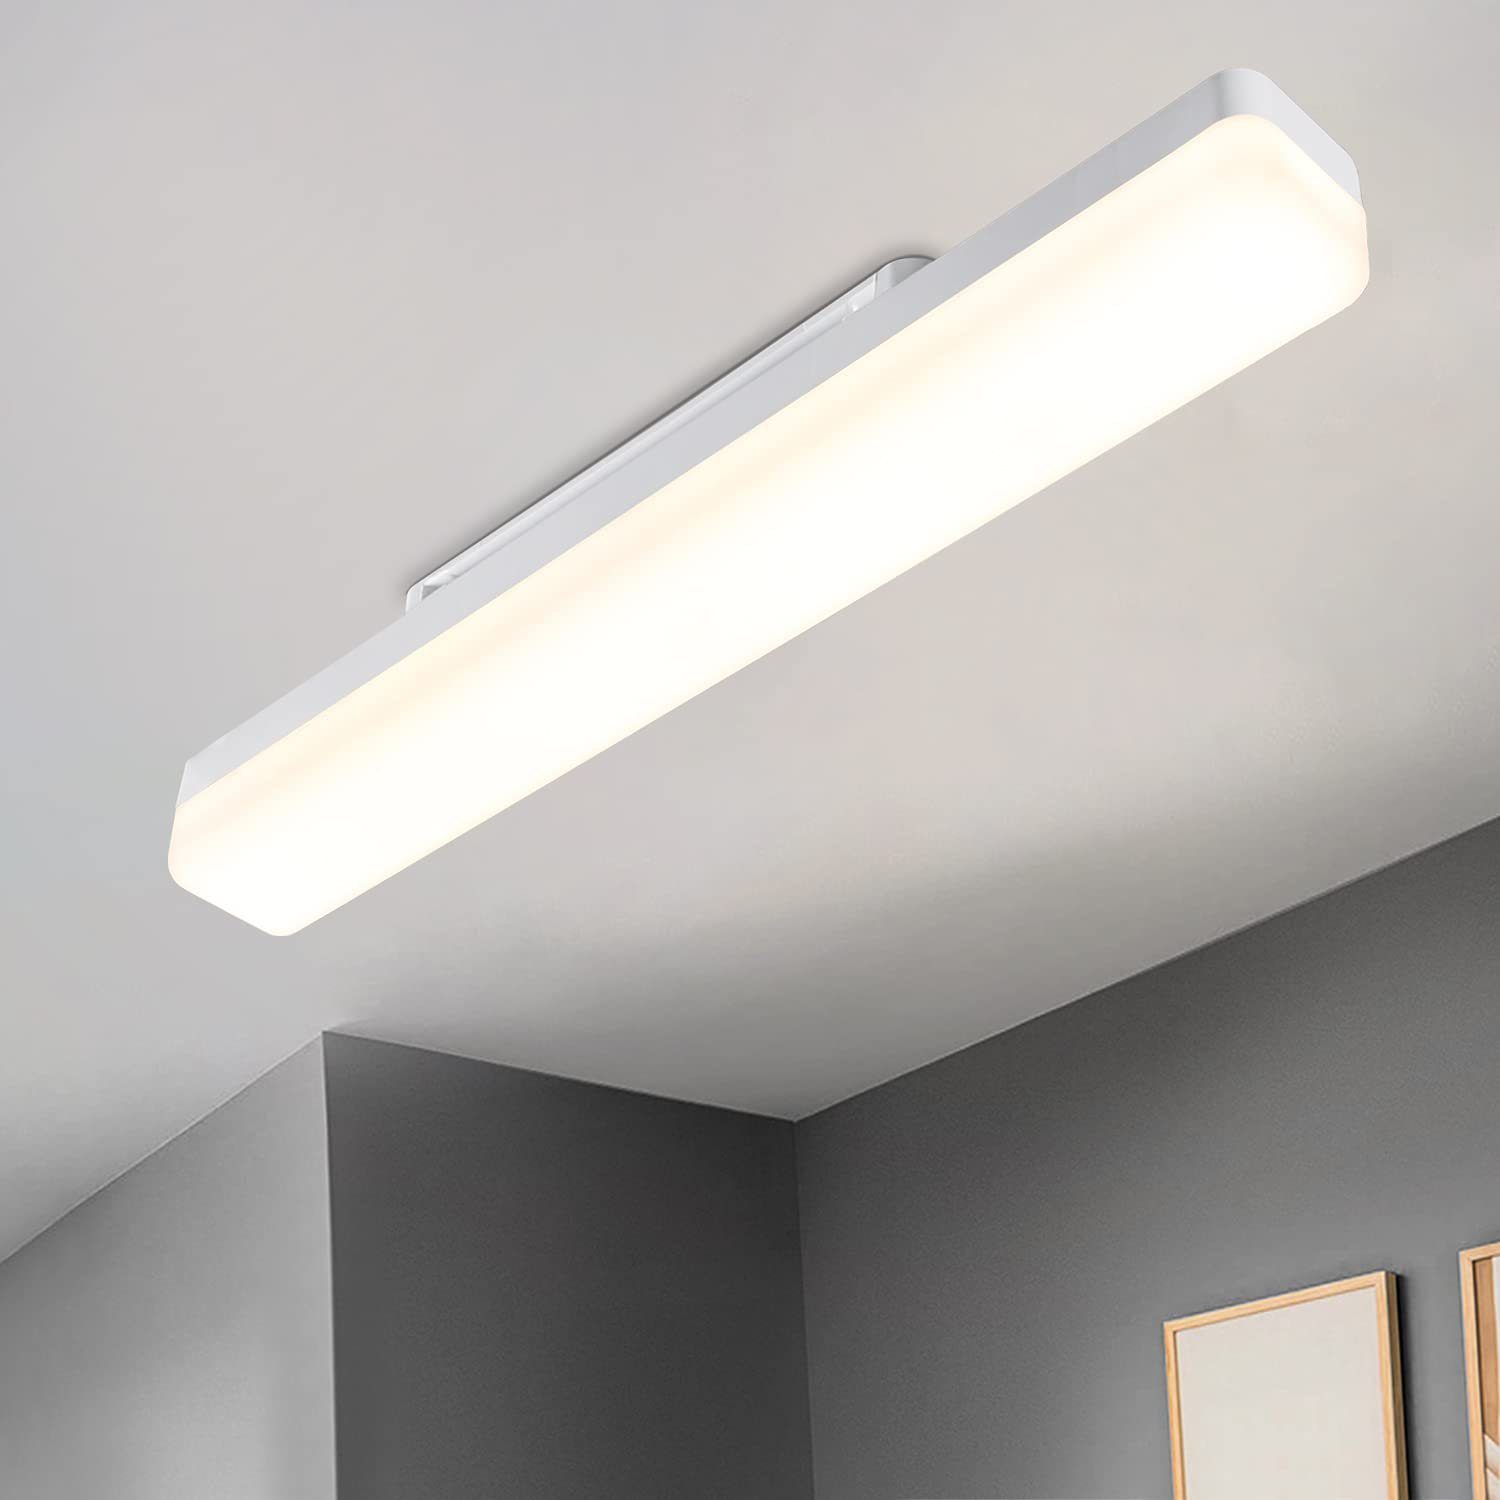 ZMH LED Deckenleuchte Wohnzimmer Modern Tageslicht weiß Augenschutz für Schlafzimmer Flur, Einfache Installation, LED fest integriert, Tageslichtweiß, 18W Flurlampe, 4000K, für Keller Büro Garage